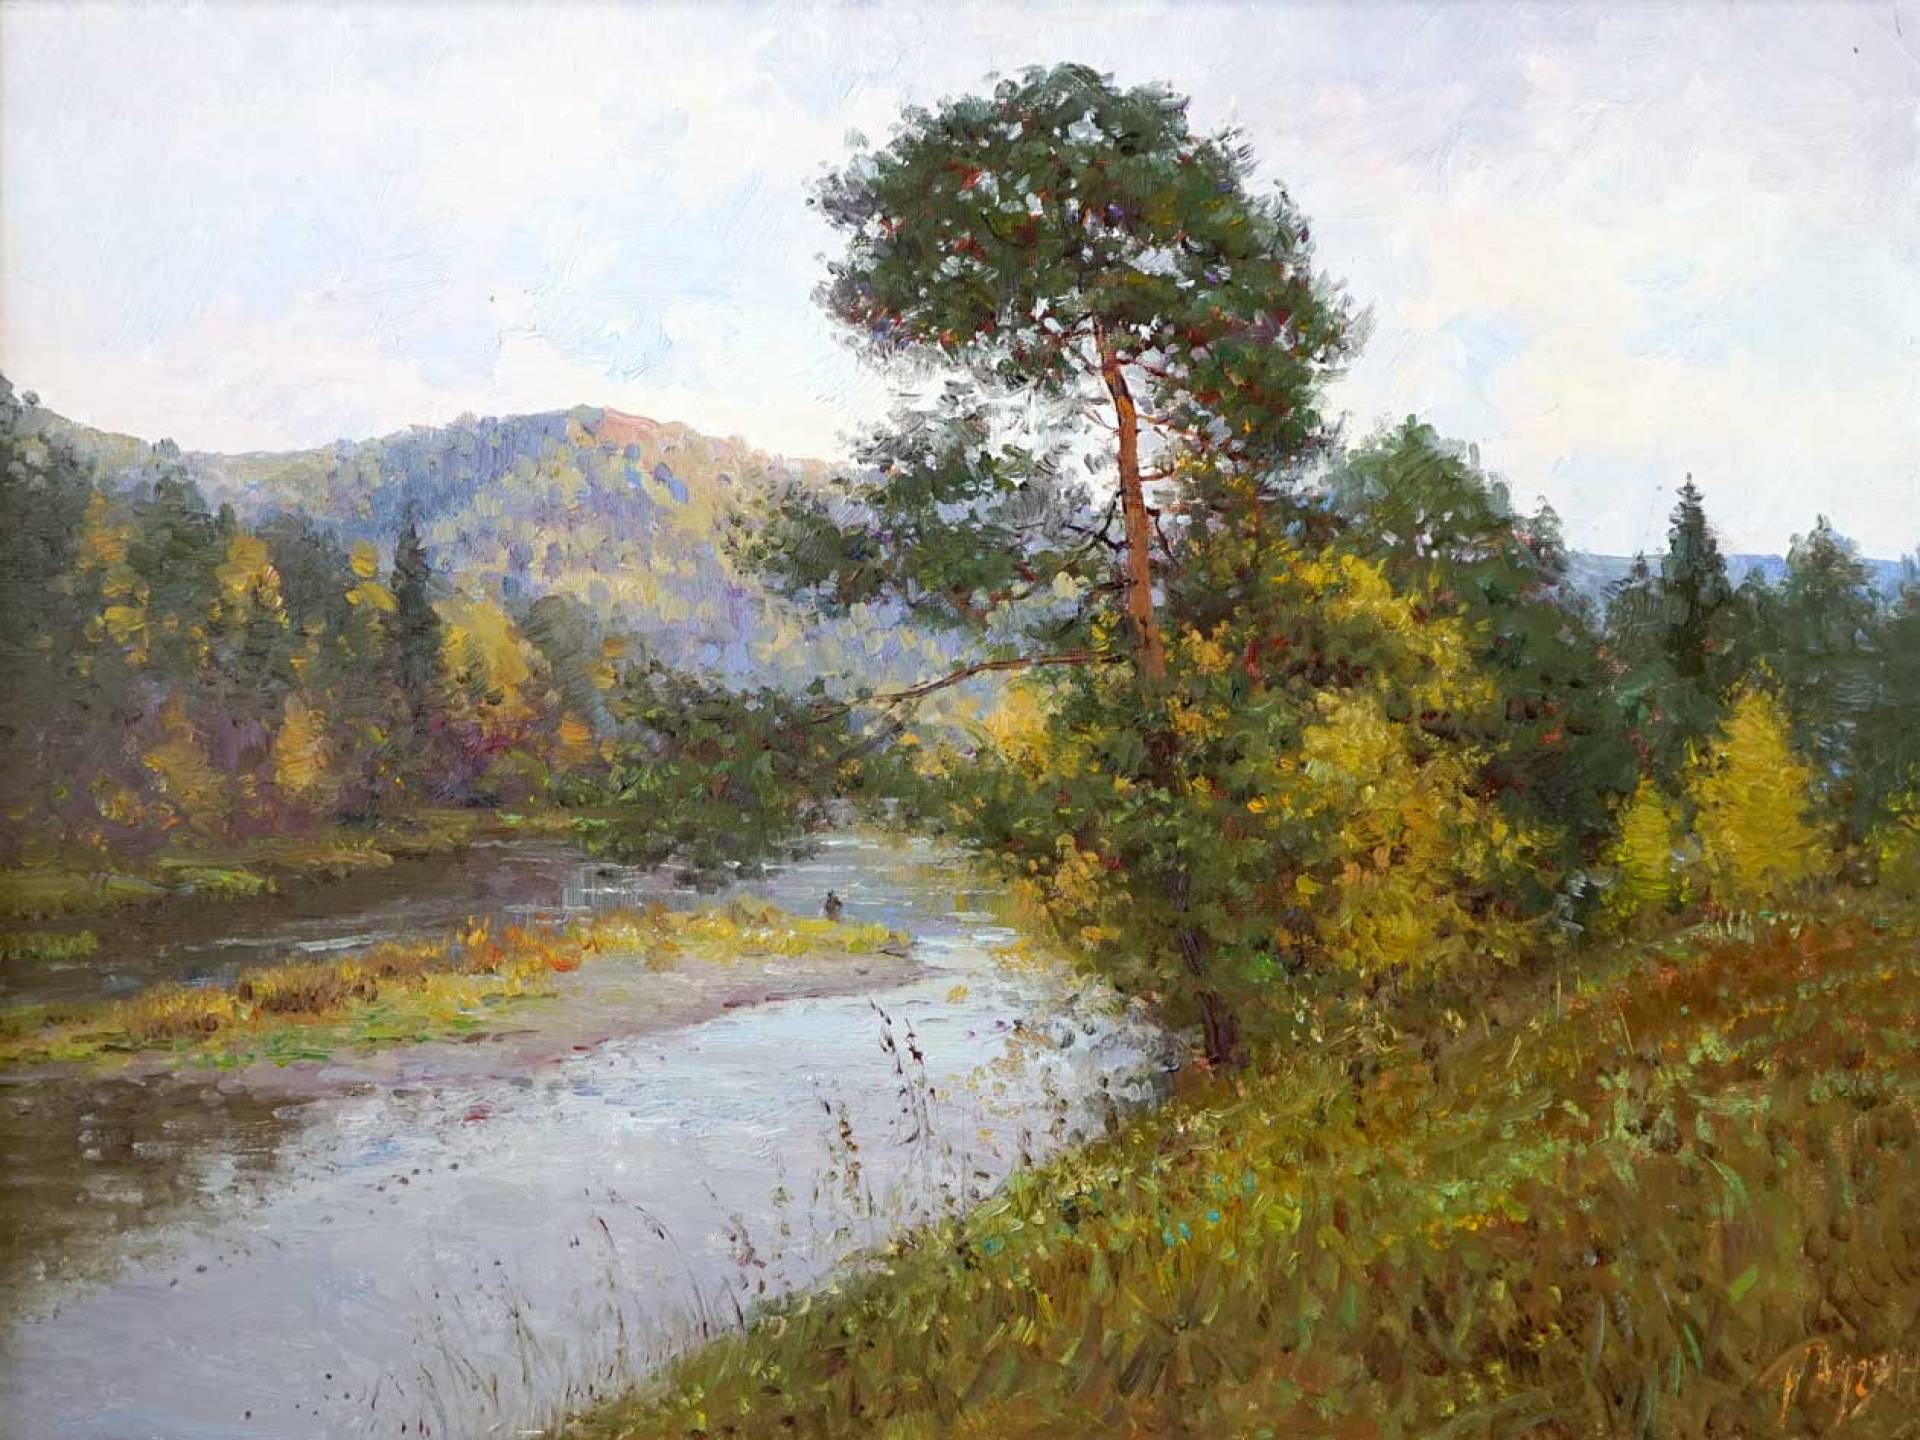 Rain on the Urals - 1, Rustem Khuzin, Buy the painting Oil